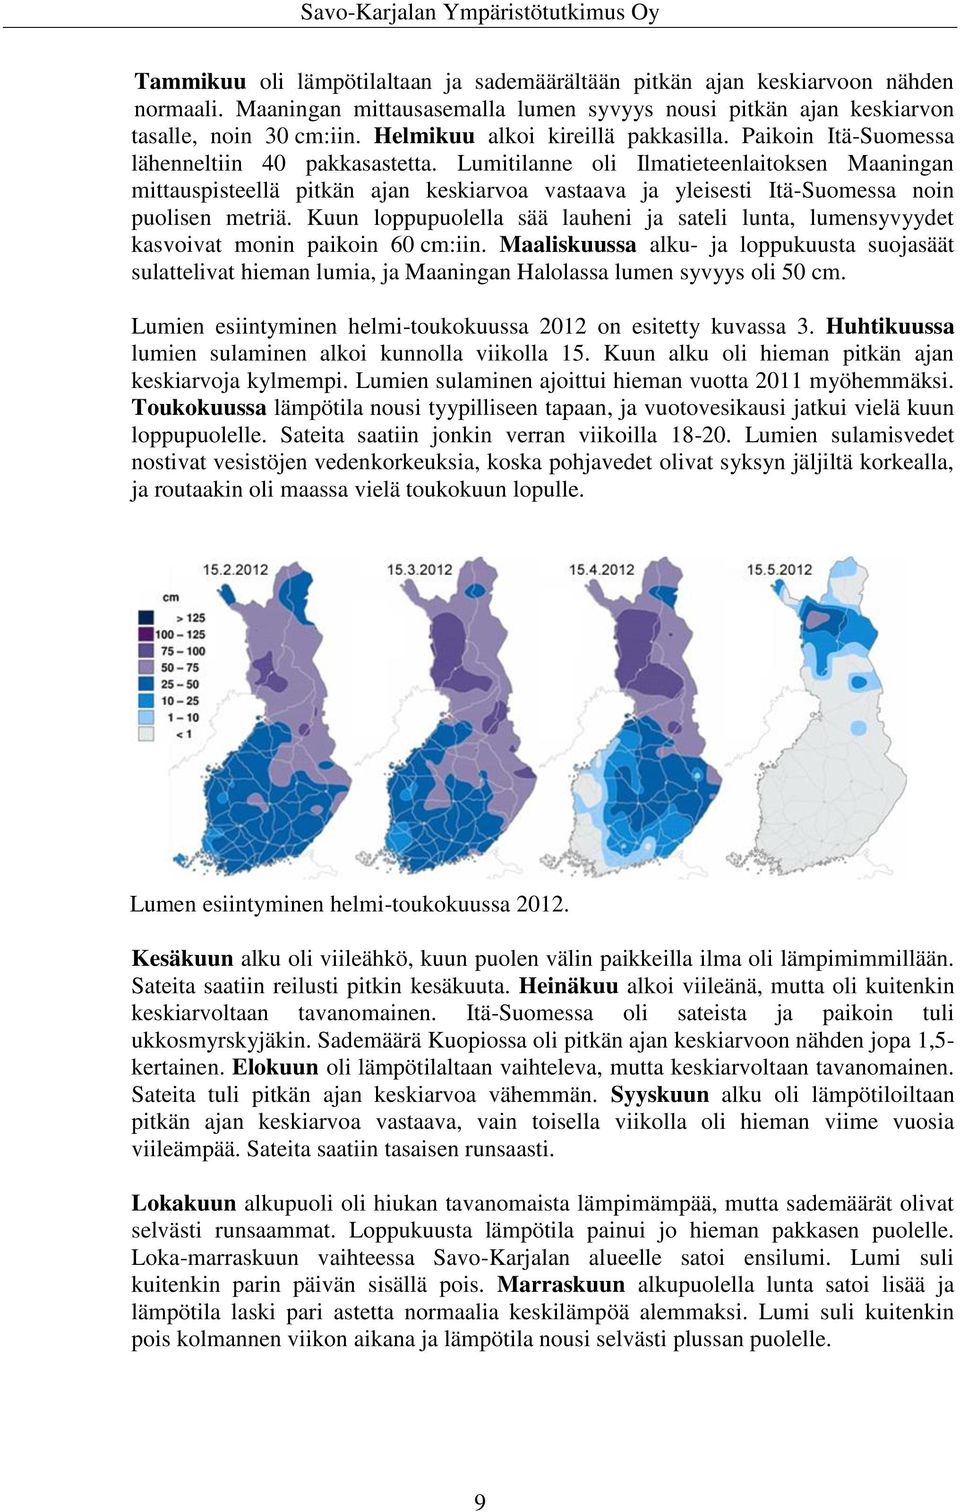 Lumitilanne oli Ilmatieteenlaitoksen Maaningan mittauspisteellä pitkän ajan keskiarvoa vastaava ja yleisesti Itä-Suomessa noin puolisen metriä.